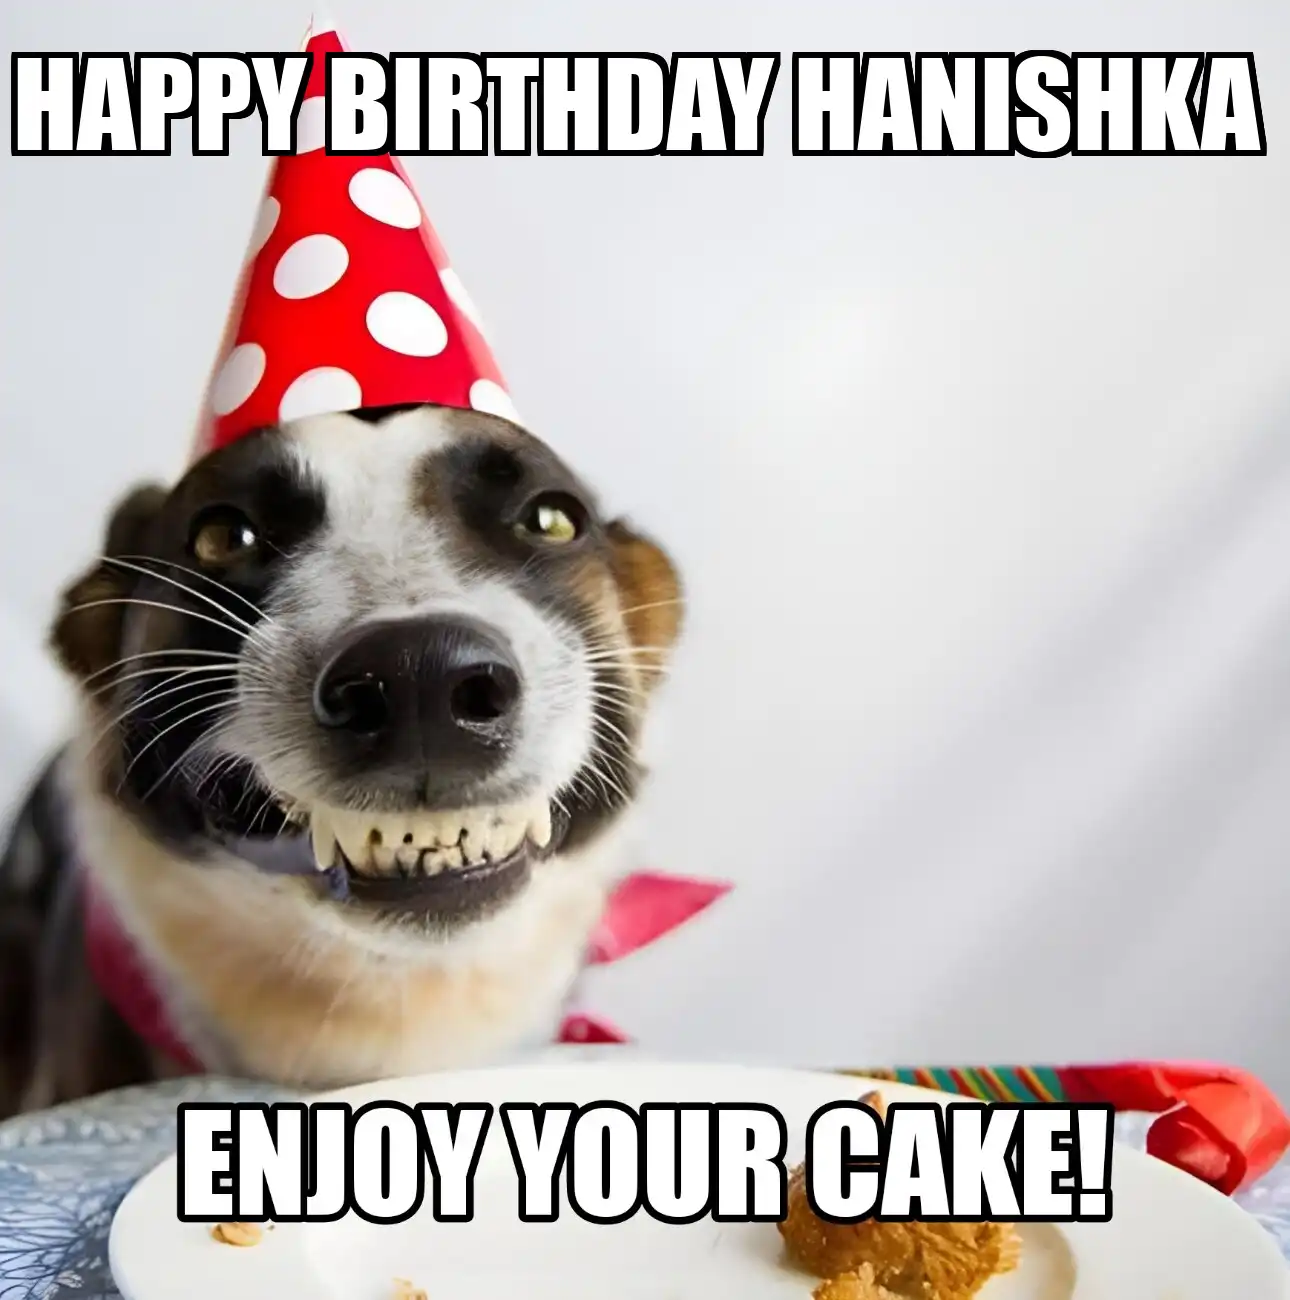 Happy Birthday Hanishka Enjoy Your Cake Dog Meme